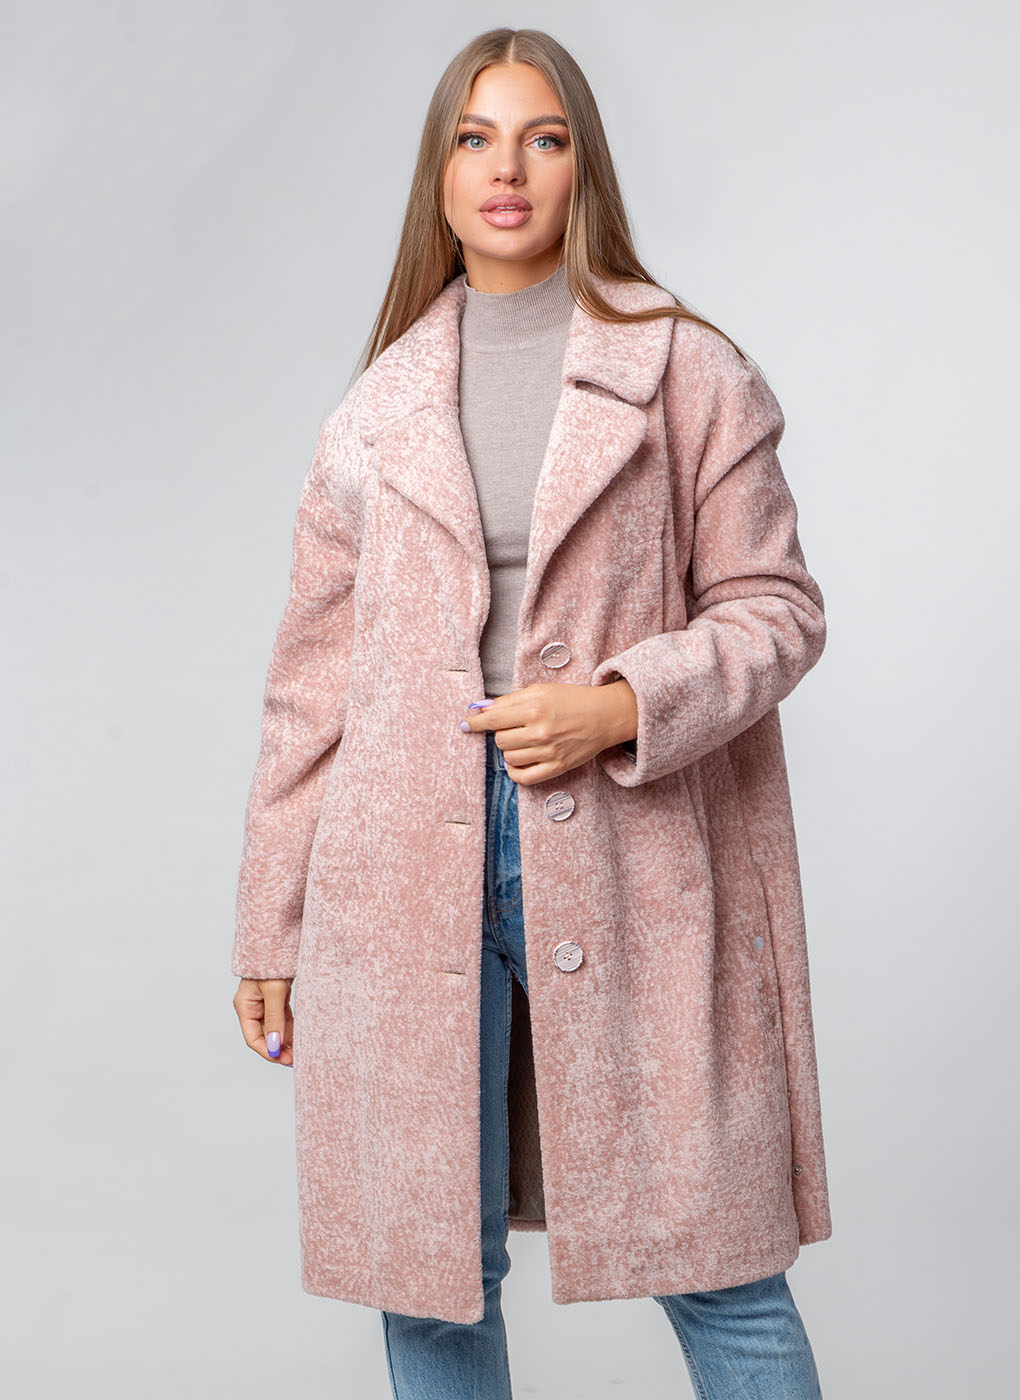 Пальто женское Каляев 55912 розовое 46 RU